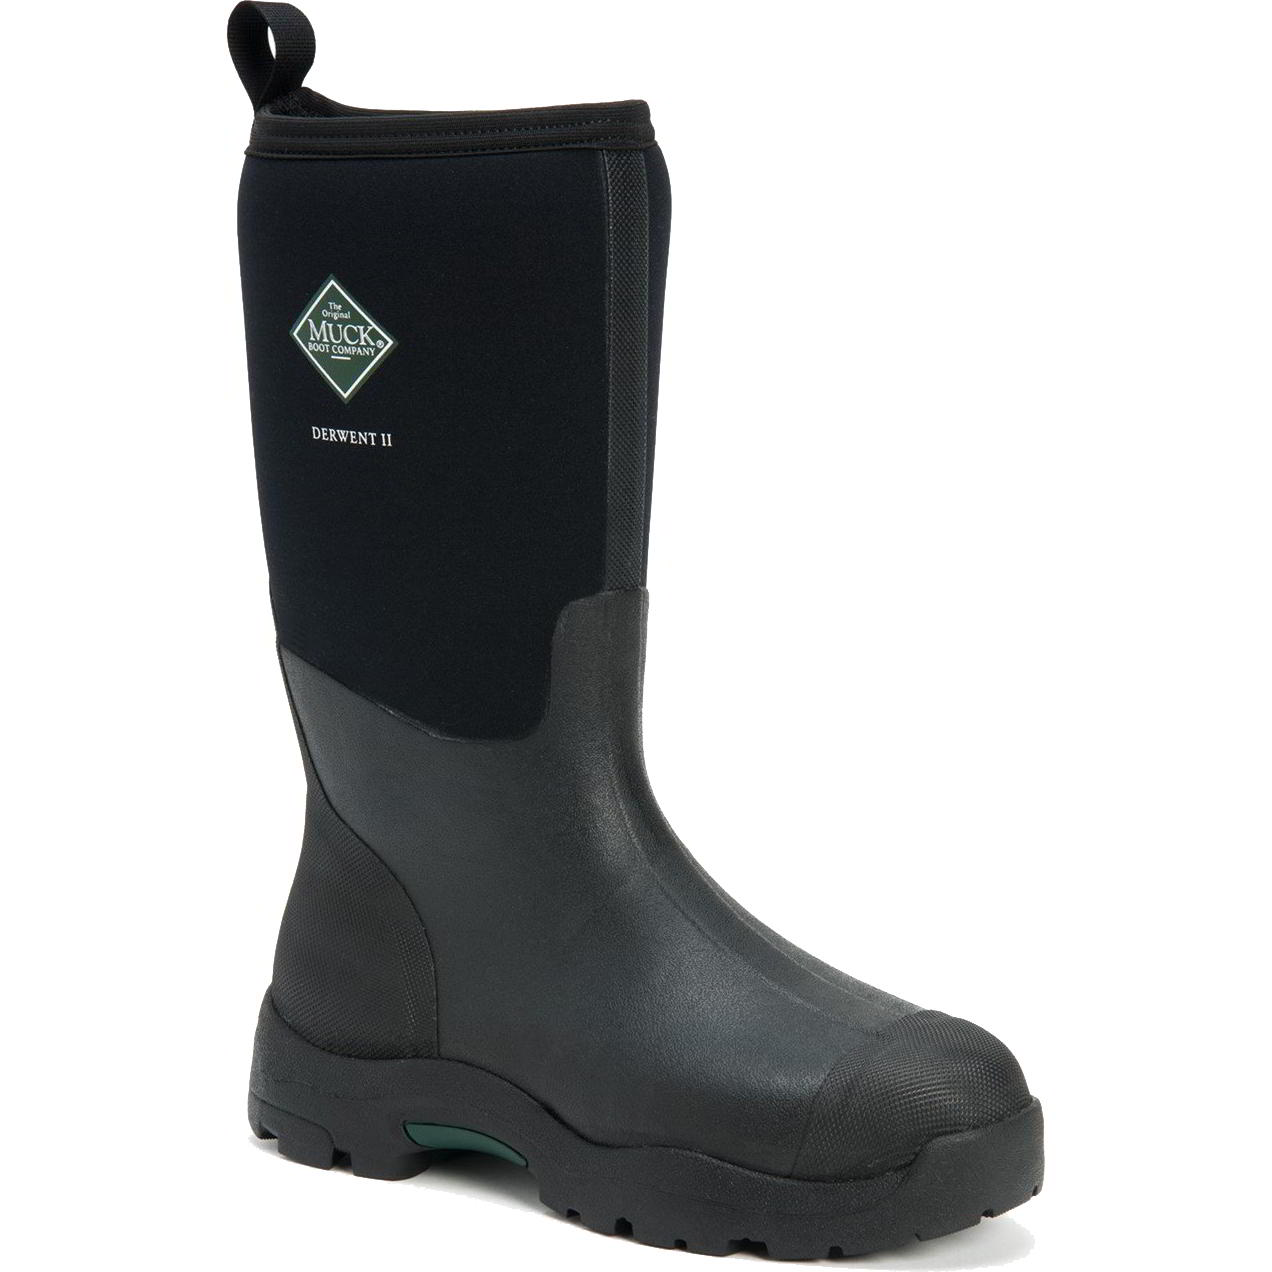 Muck Boots Mens Derwent II Neoprene Wellies Rain - UK 11 Black 2951